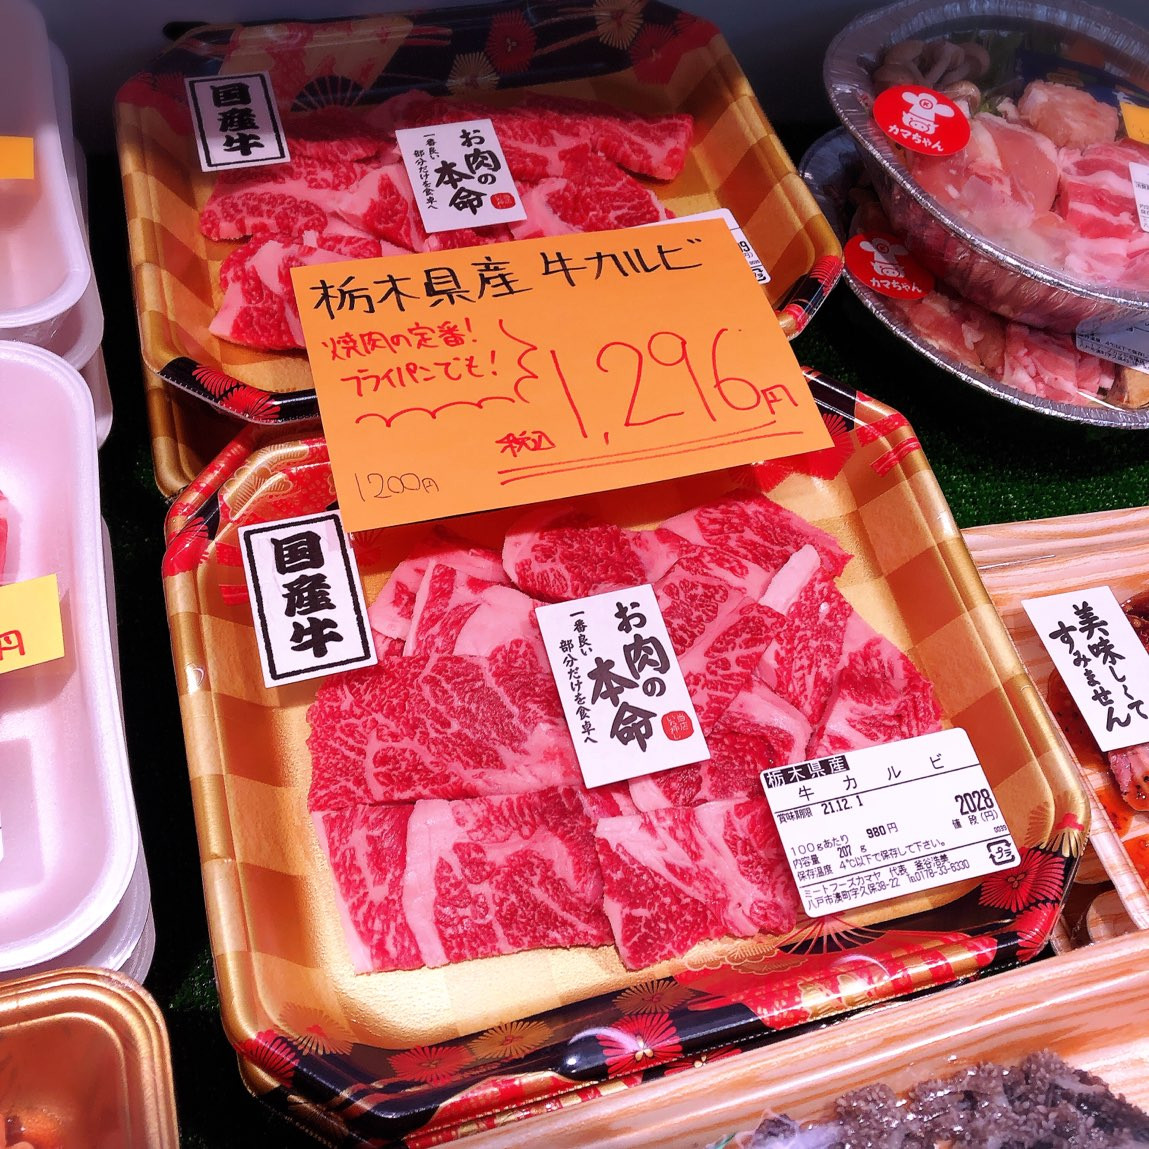 本日は栃木県産牛カルビがお買得です。